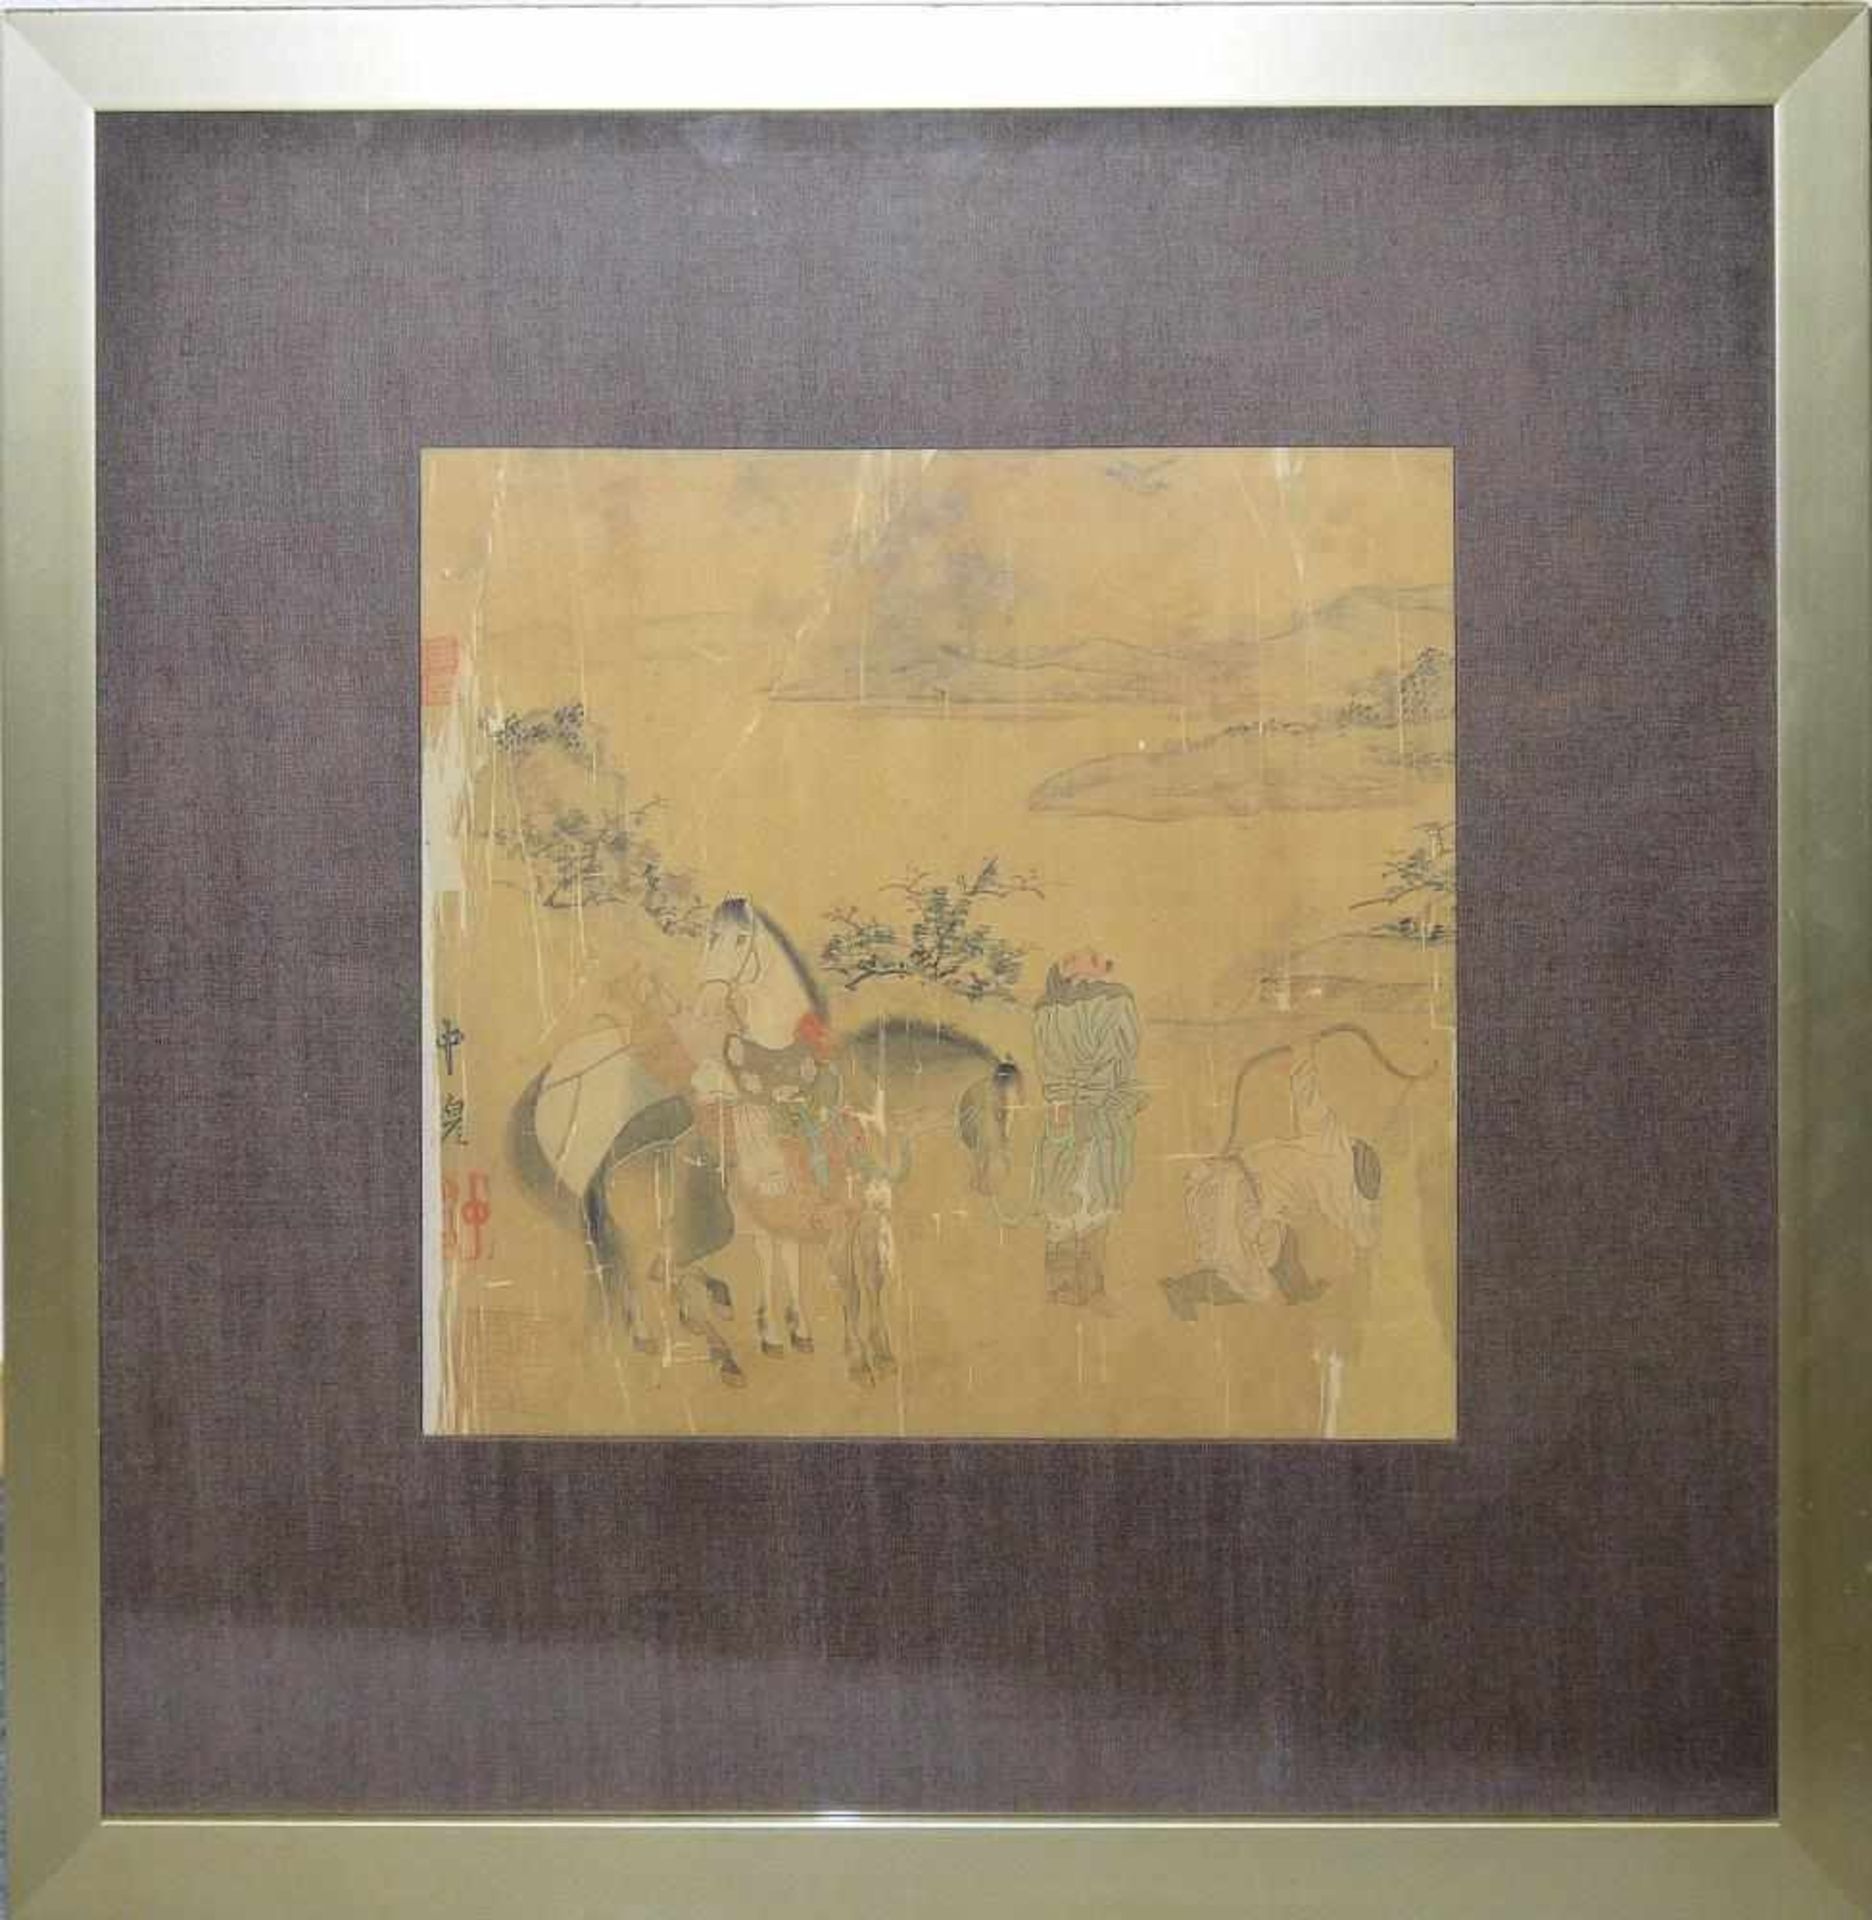 Zhao Yong sign., Bogenschützen, Tuschemalerei der Yuan/Ming-Zeit, China, wohl 14./15. Jh. Zwei Jäger